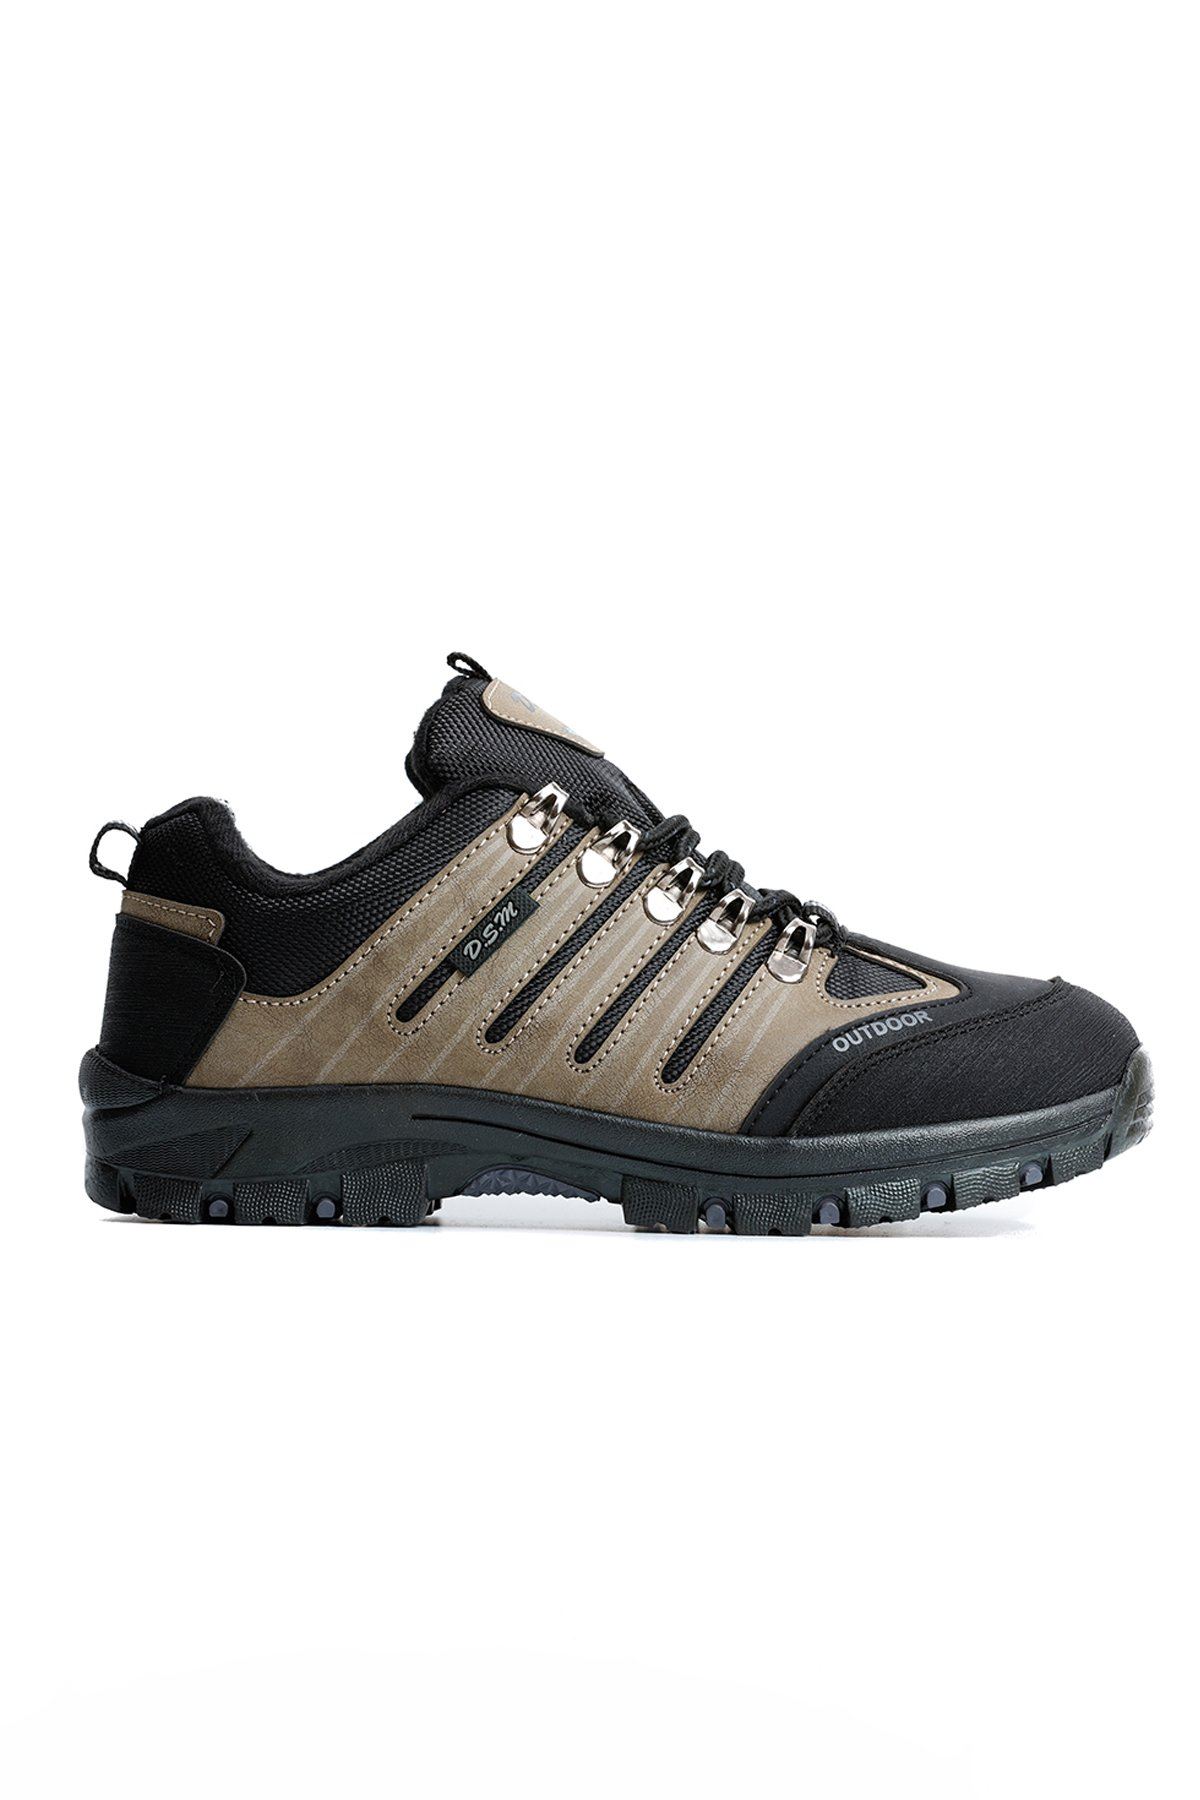 Unisex Outdoor Ayakkabı DSM1 - Vizon